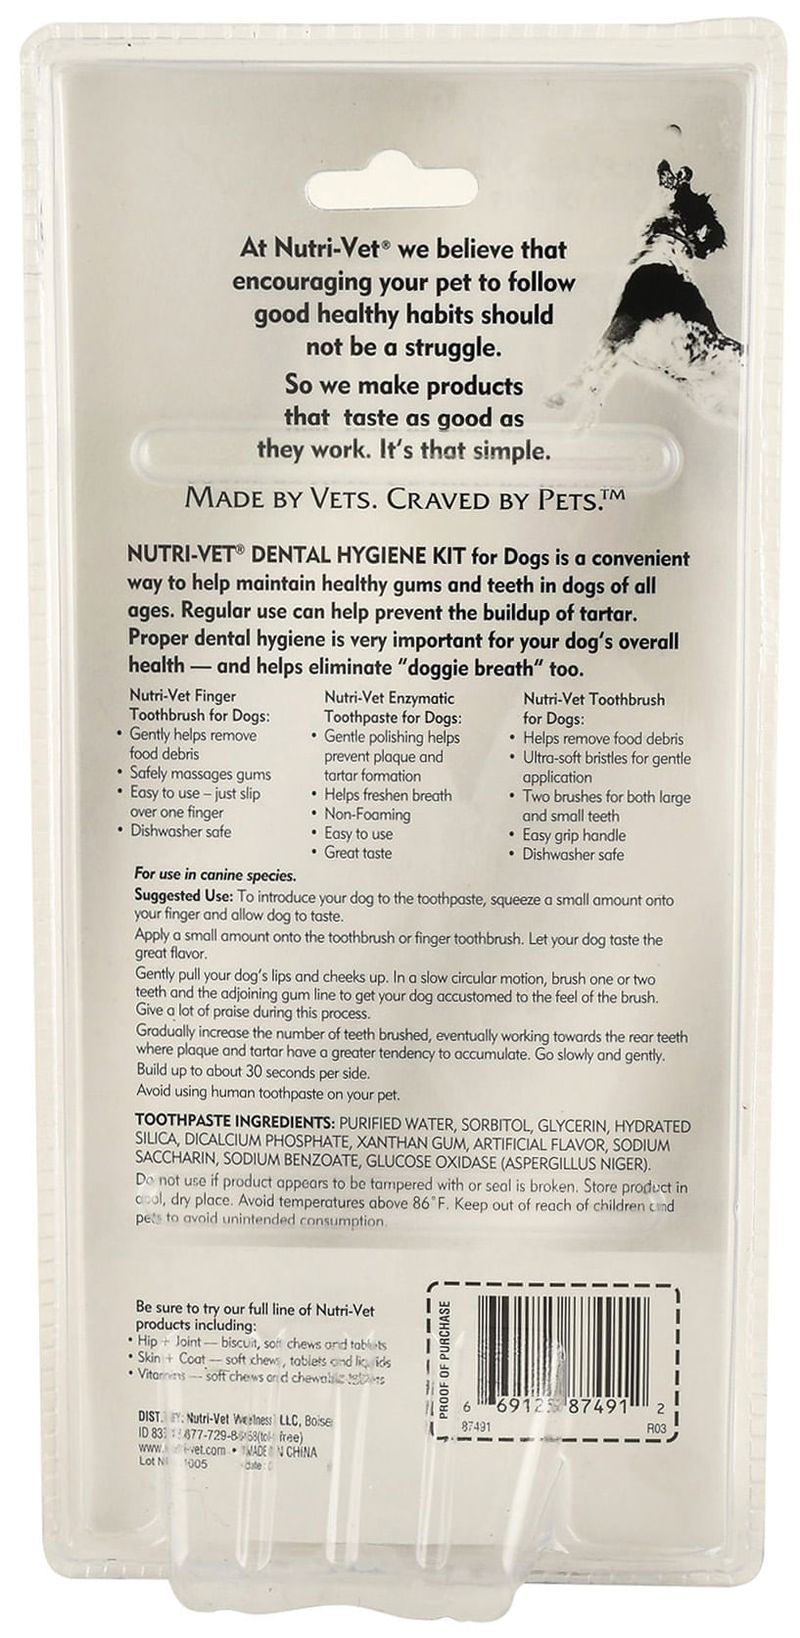 Nutri-Vet-Dental-Hygiene-Kit-for-Dogs